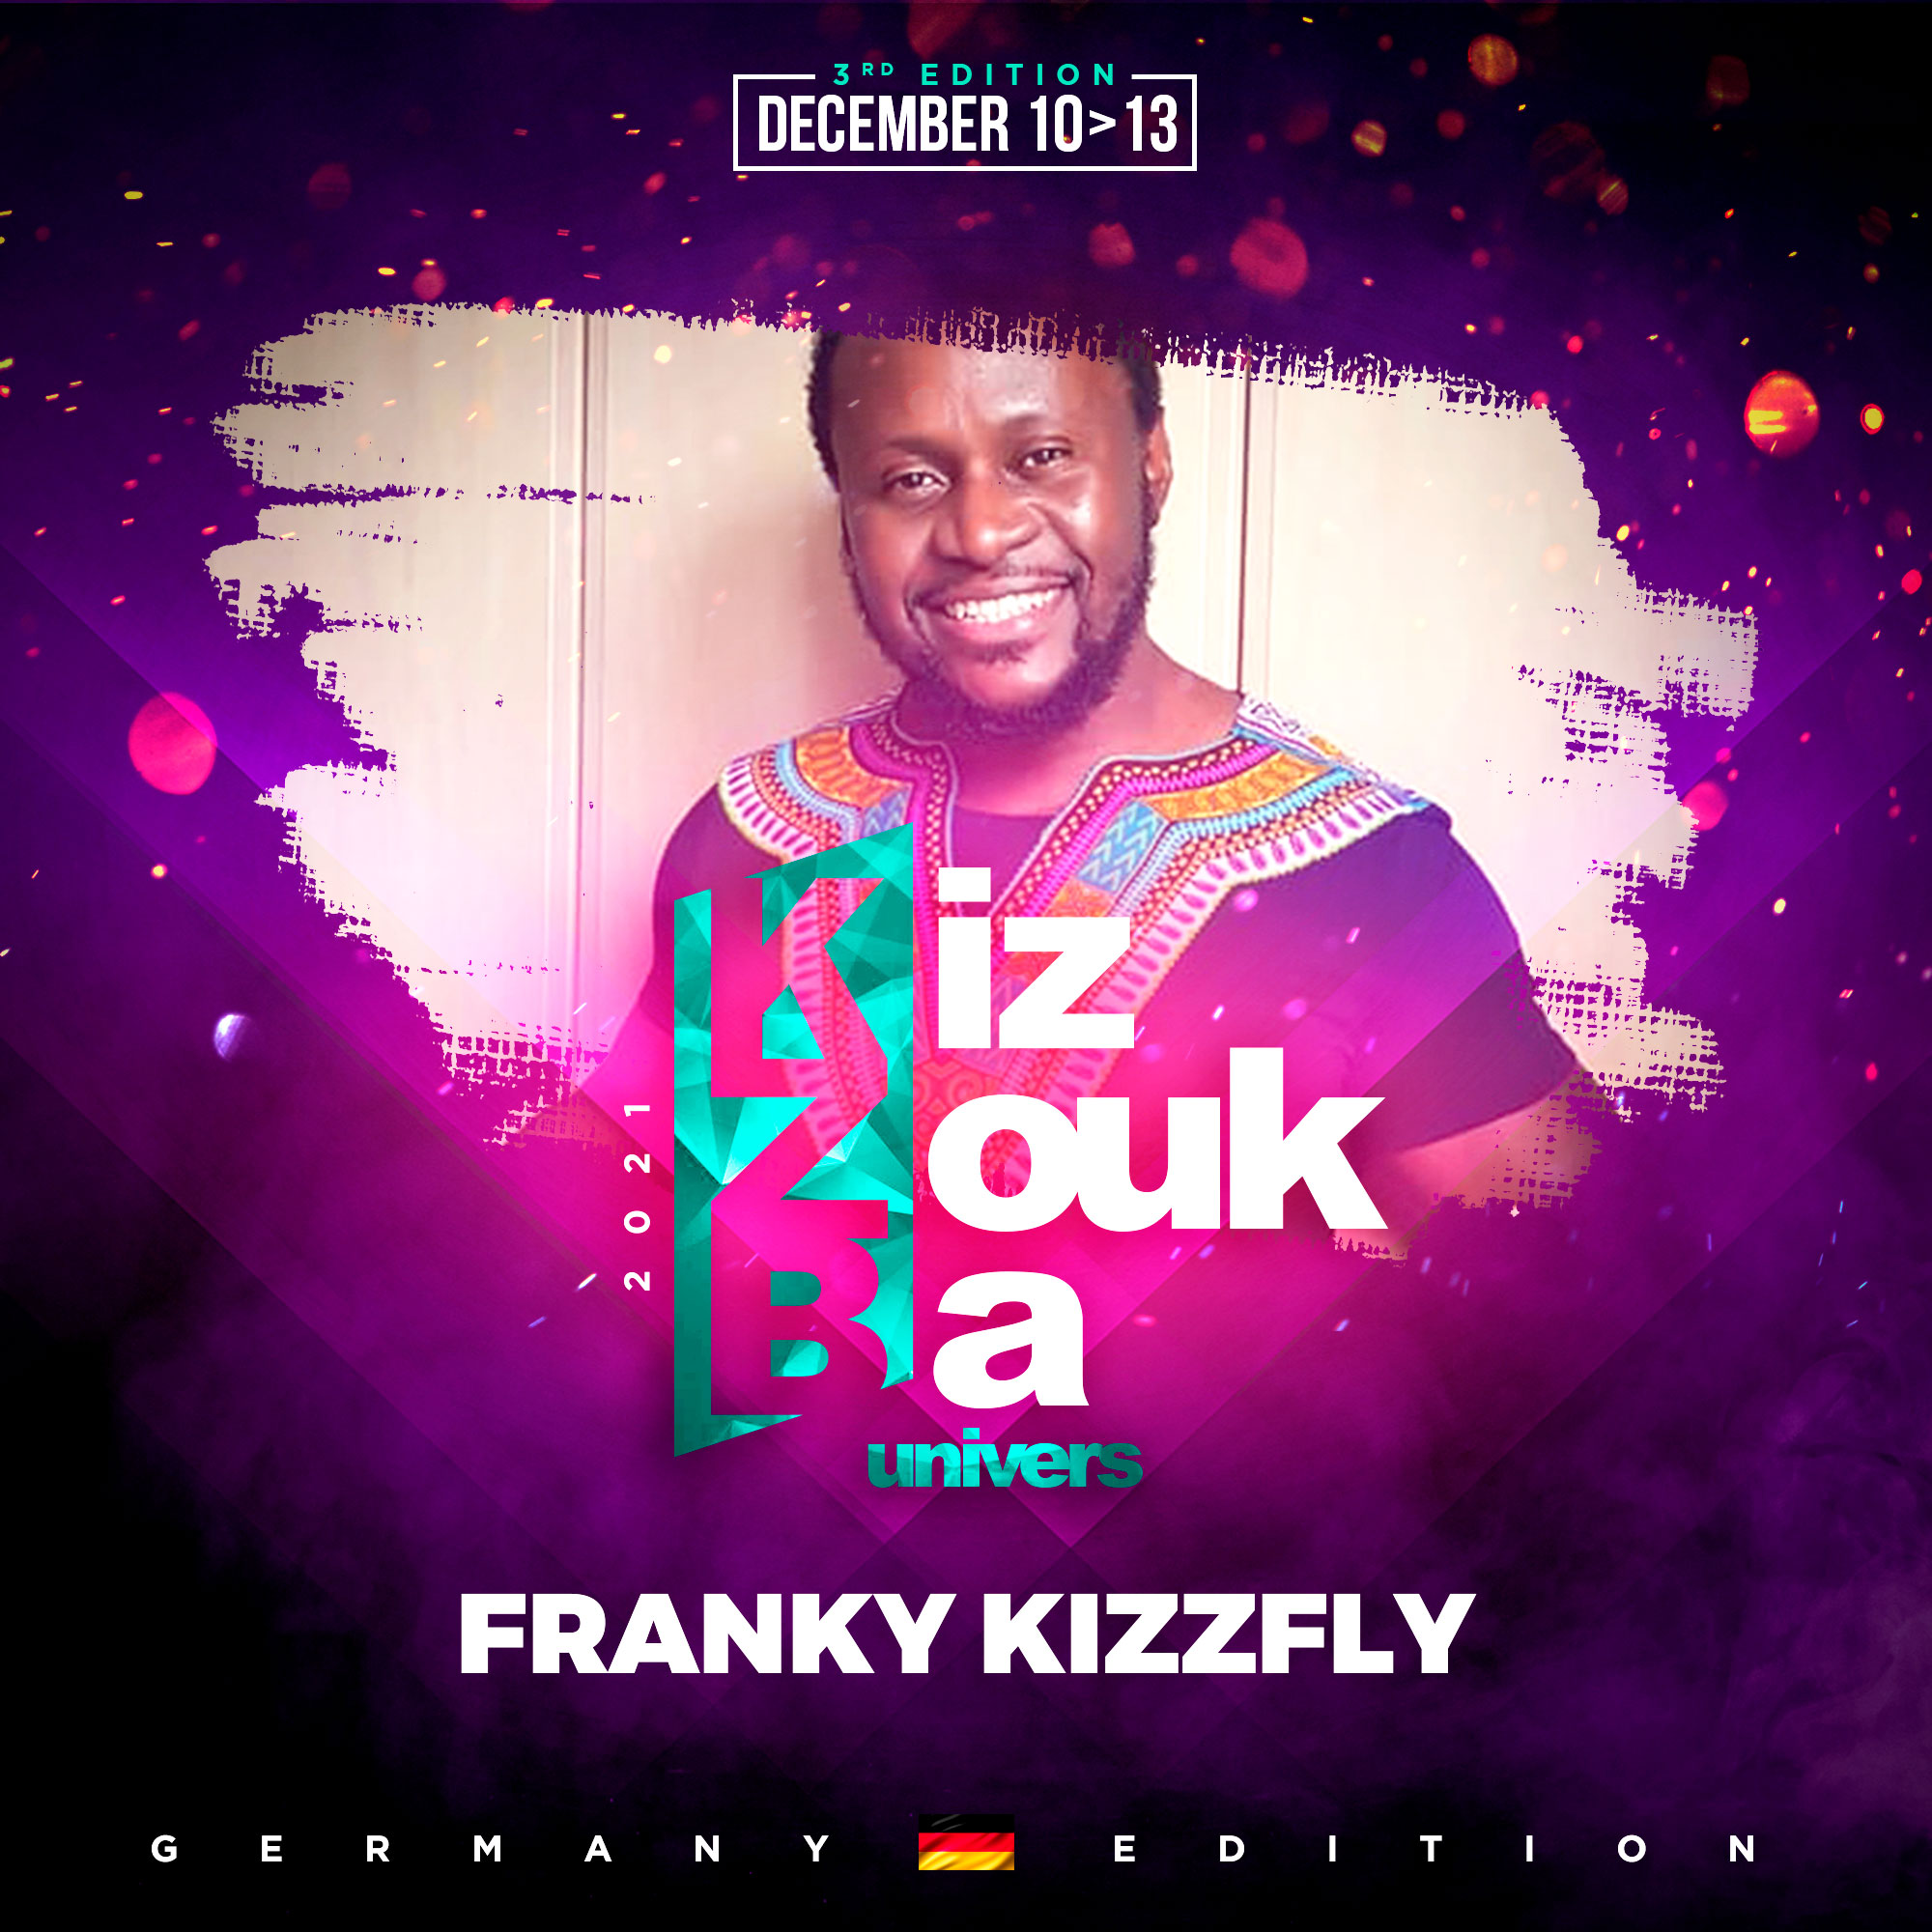 Franky Kizzfly